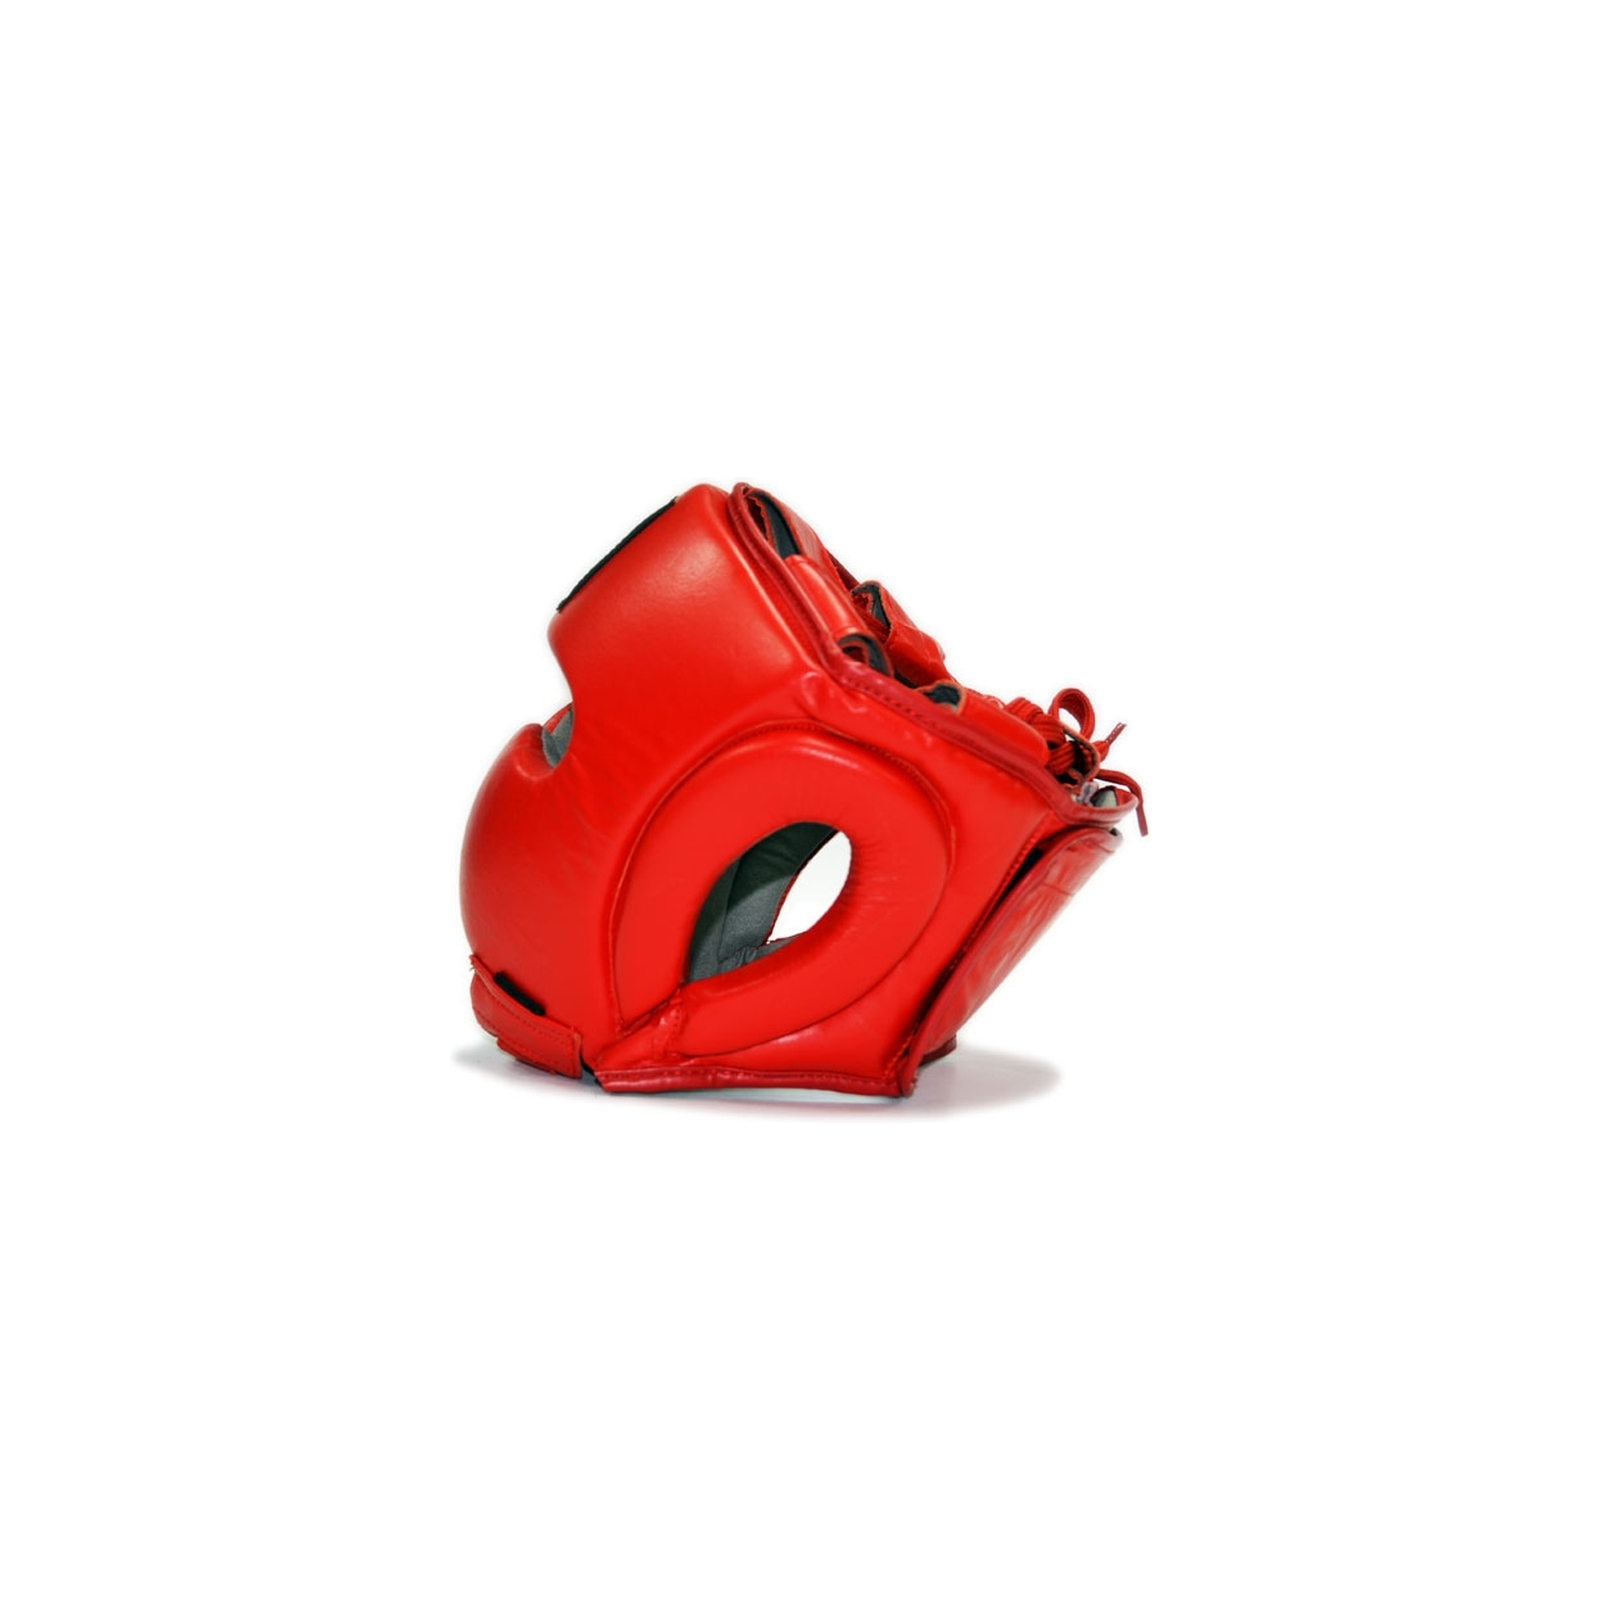 Боксерський шолом Thor 716 S ПУ-шкіра Червоний (716 (PU) RED S) зображення 2